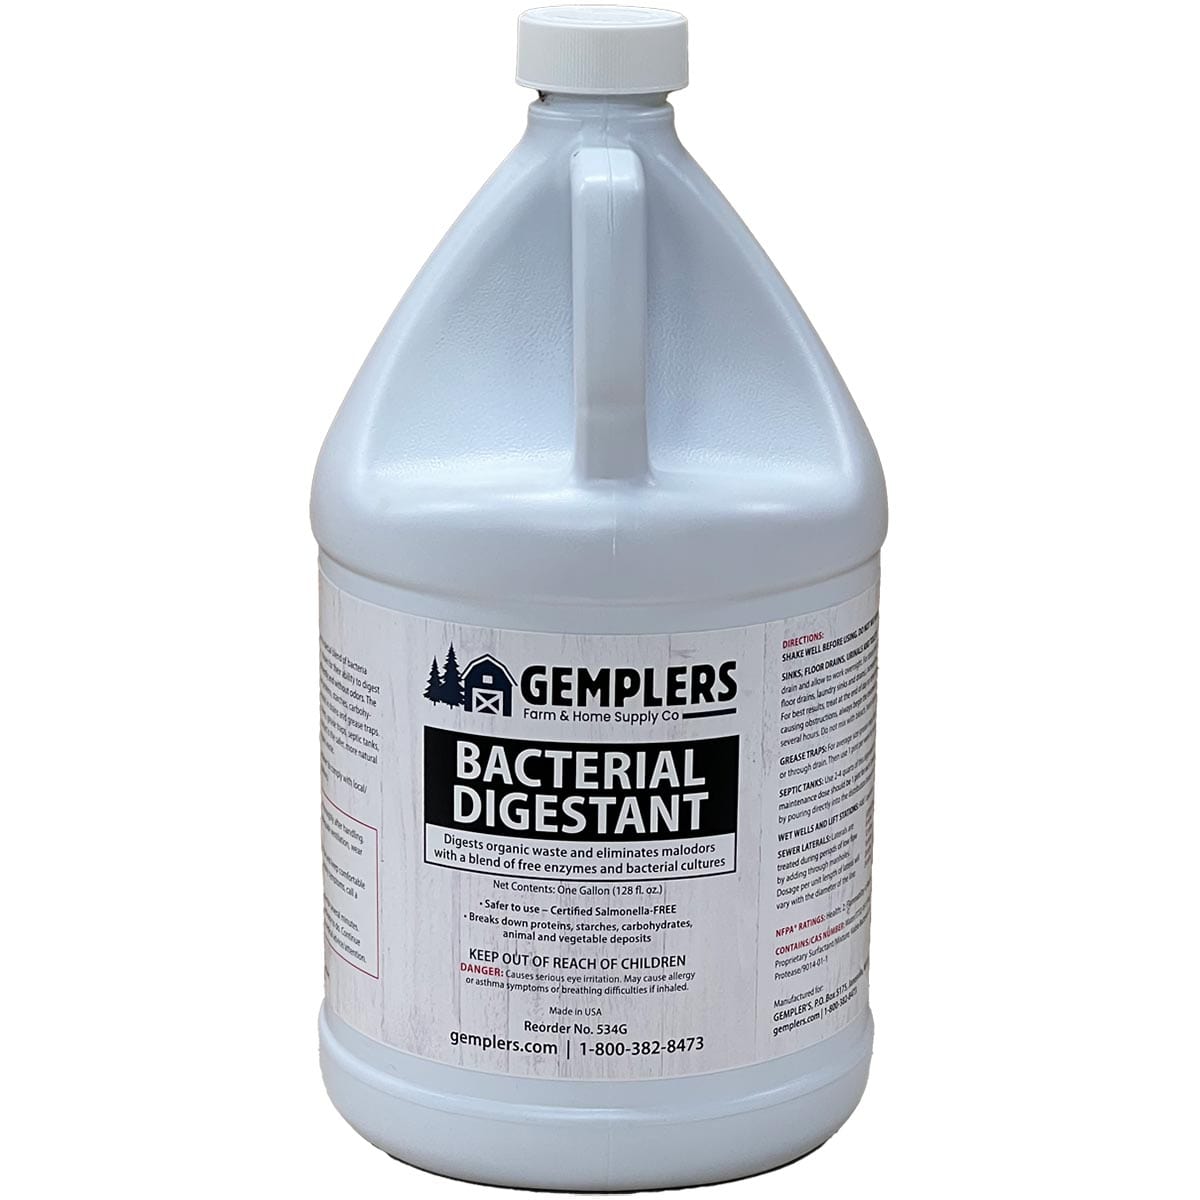 https://gemplers.com/cdn/shop/files/534G-bacterial-digestant.jpg?v=1686590847